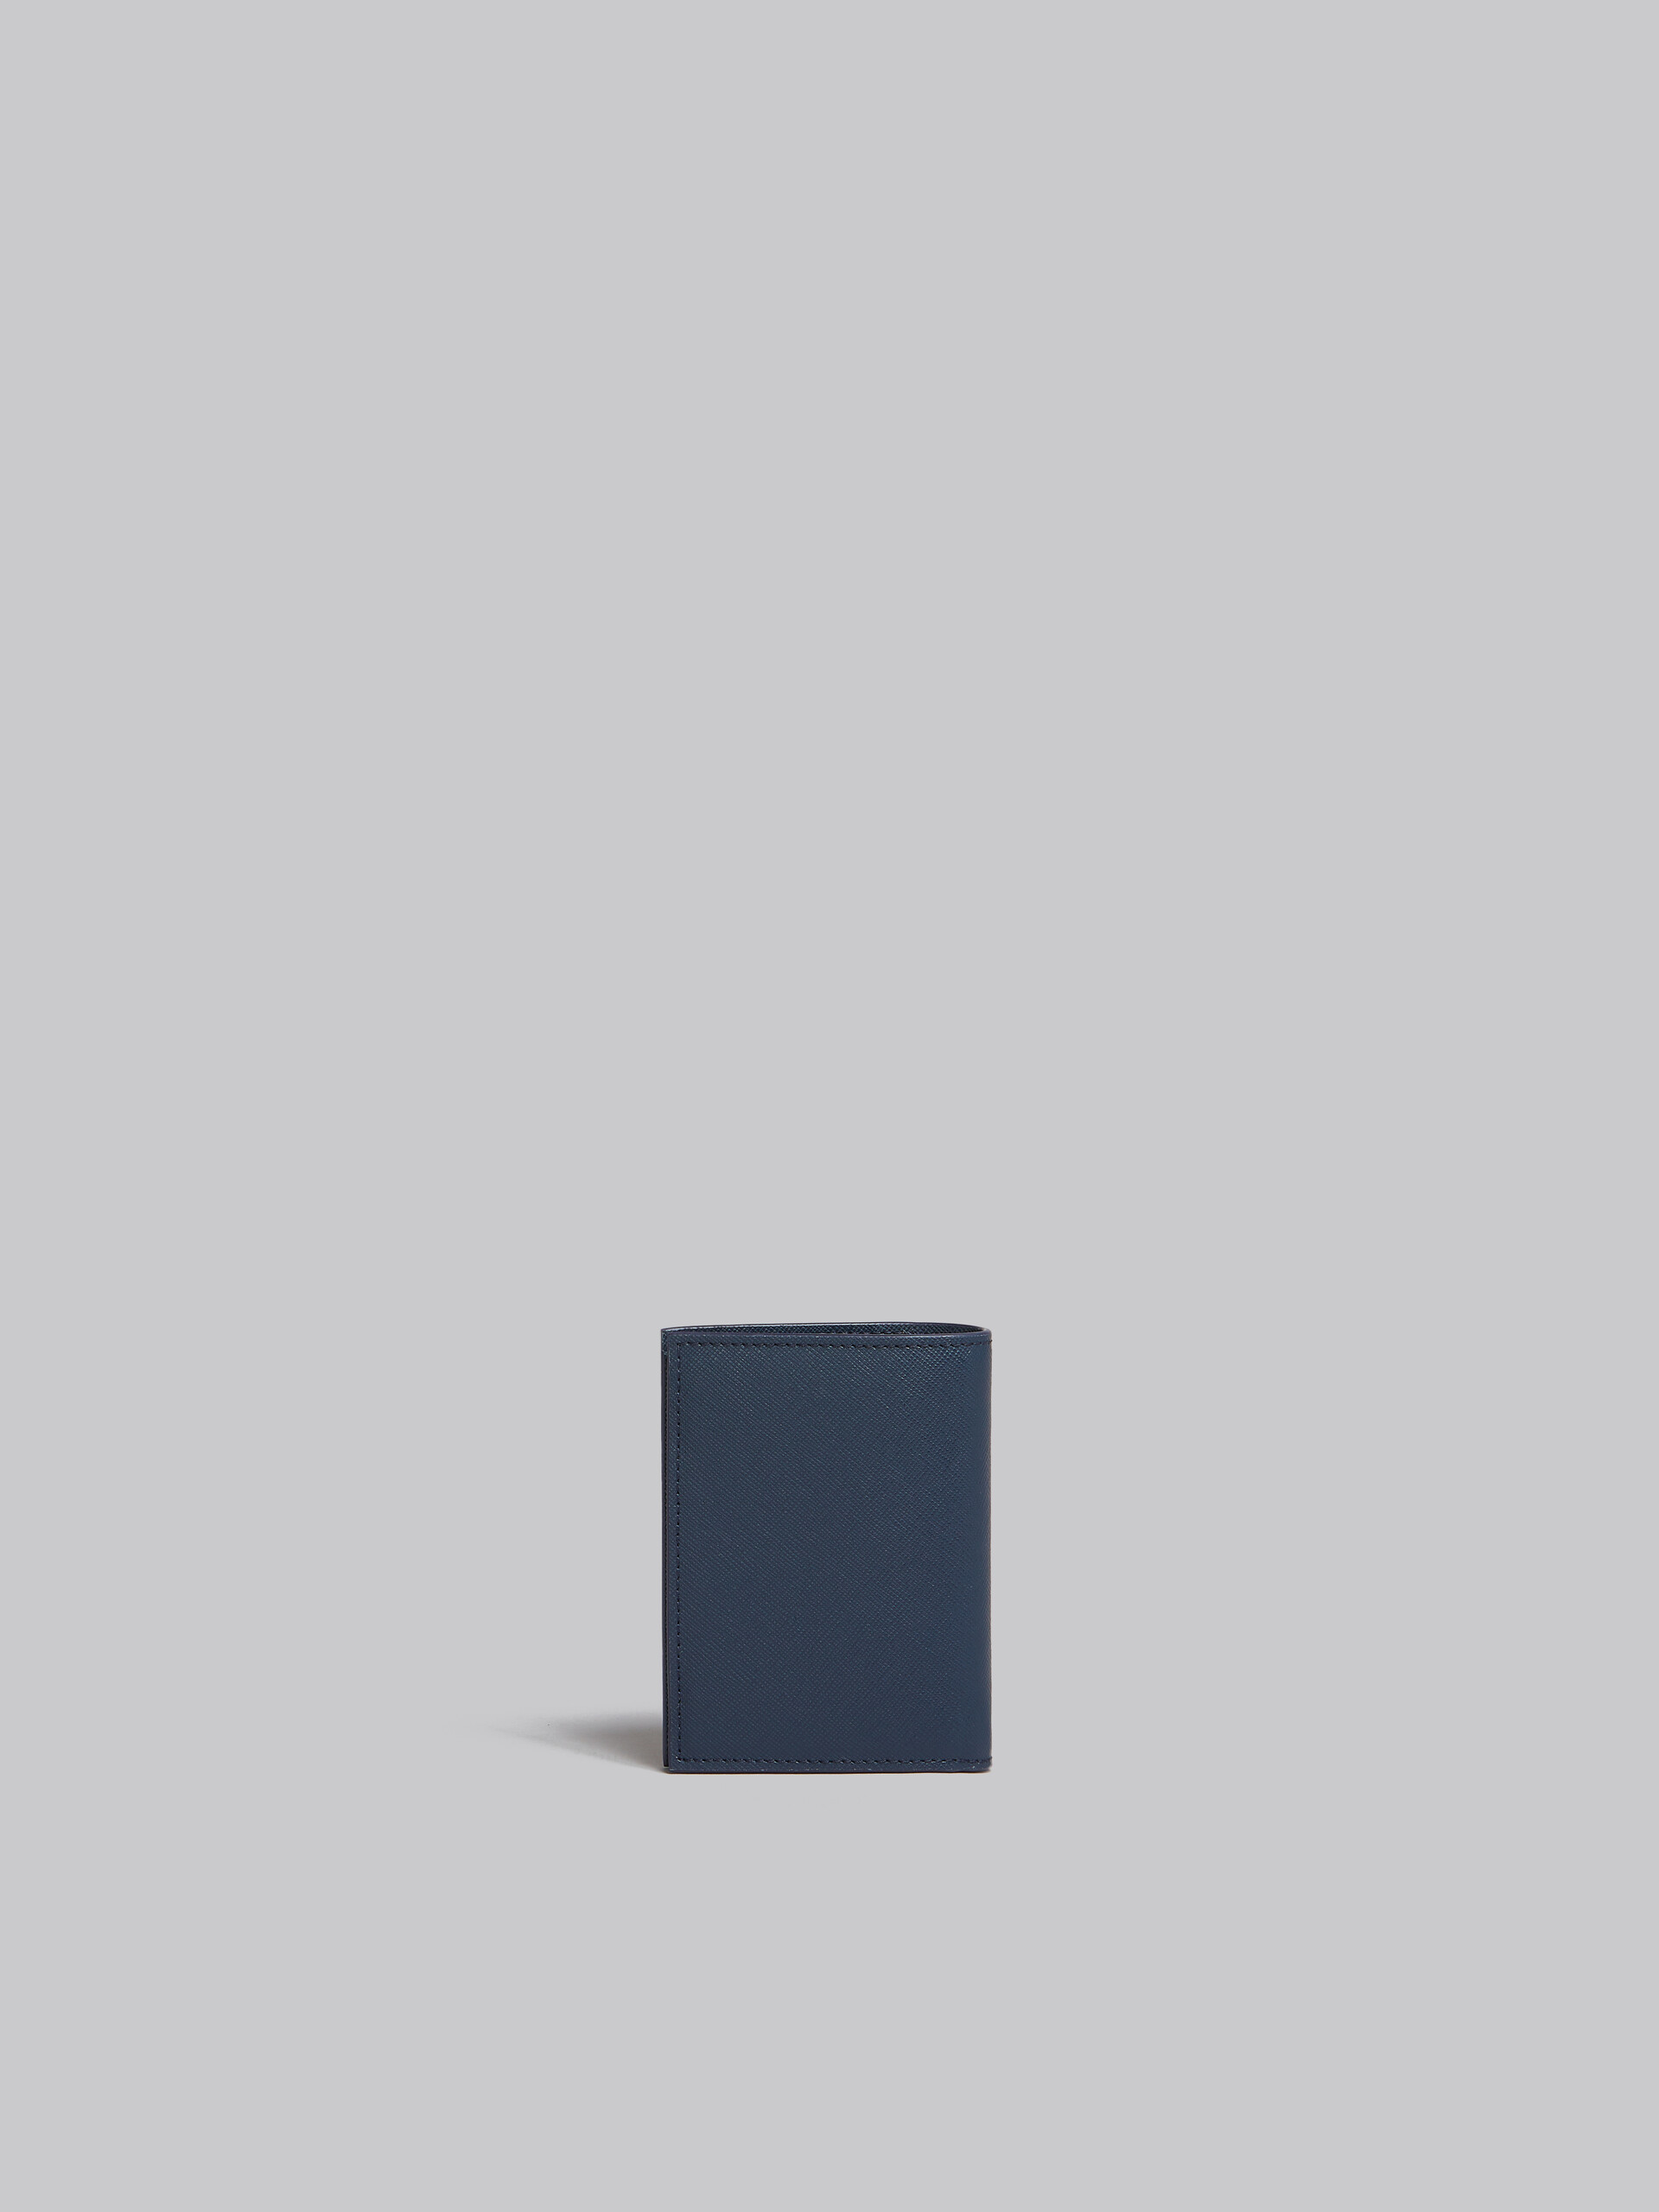 ディープブルー グリーン サフィアーノレザー製 二つ折りウォレット - 財布 - Image 3